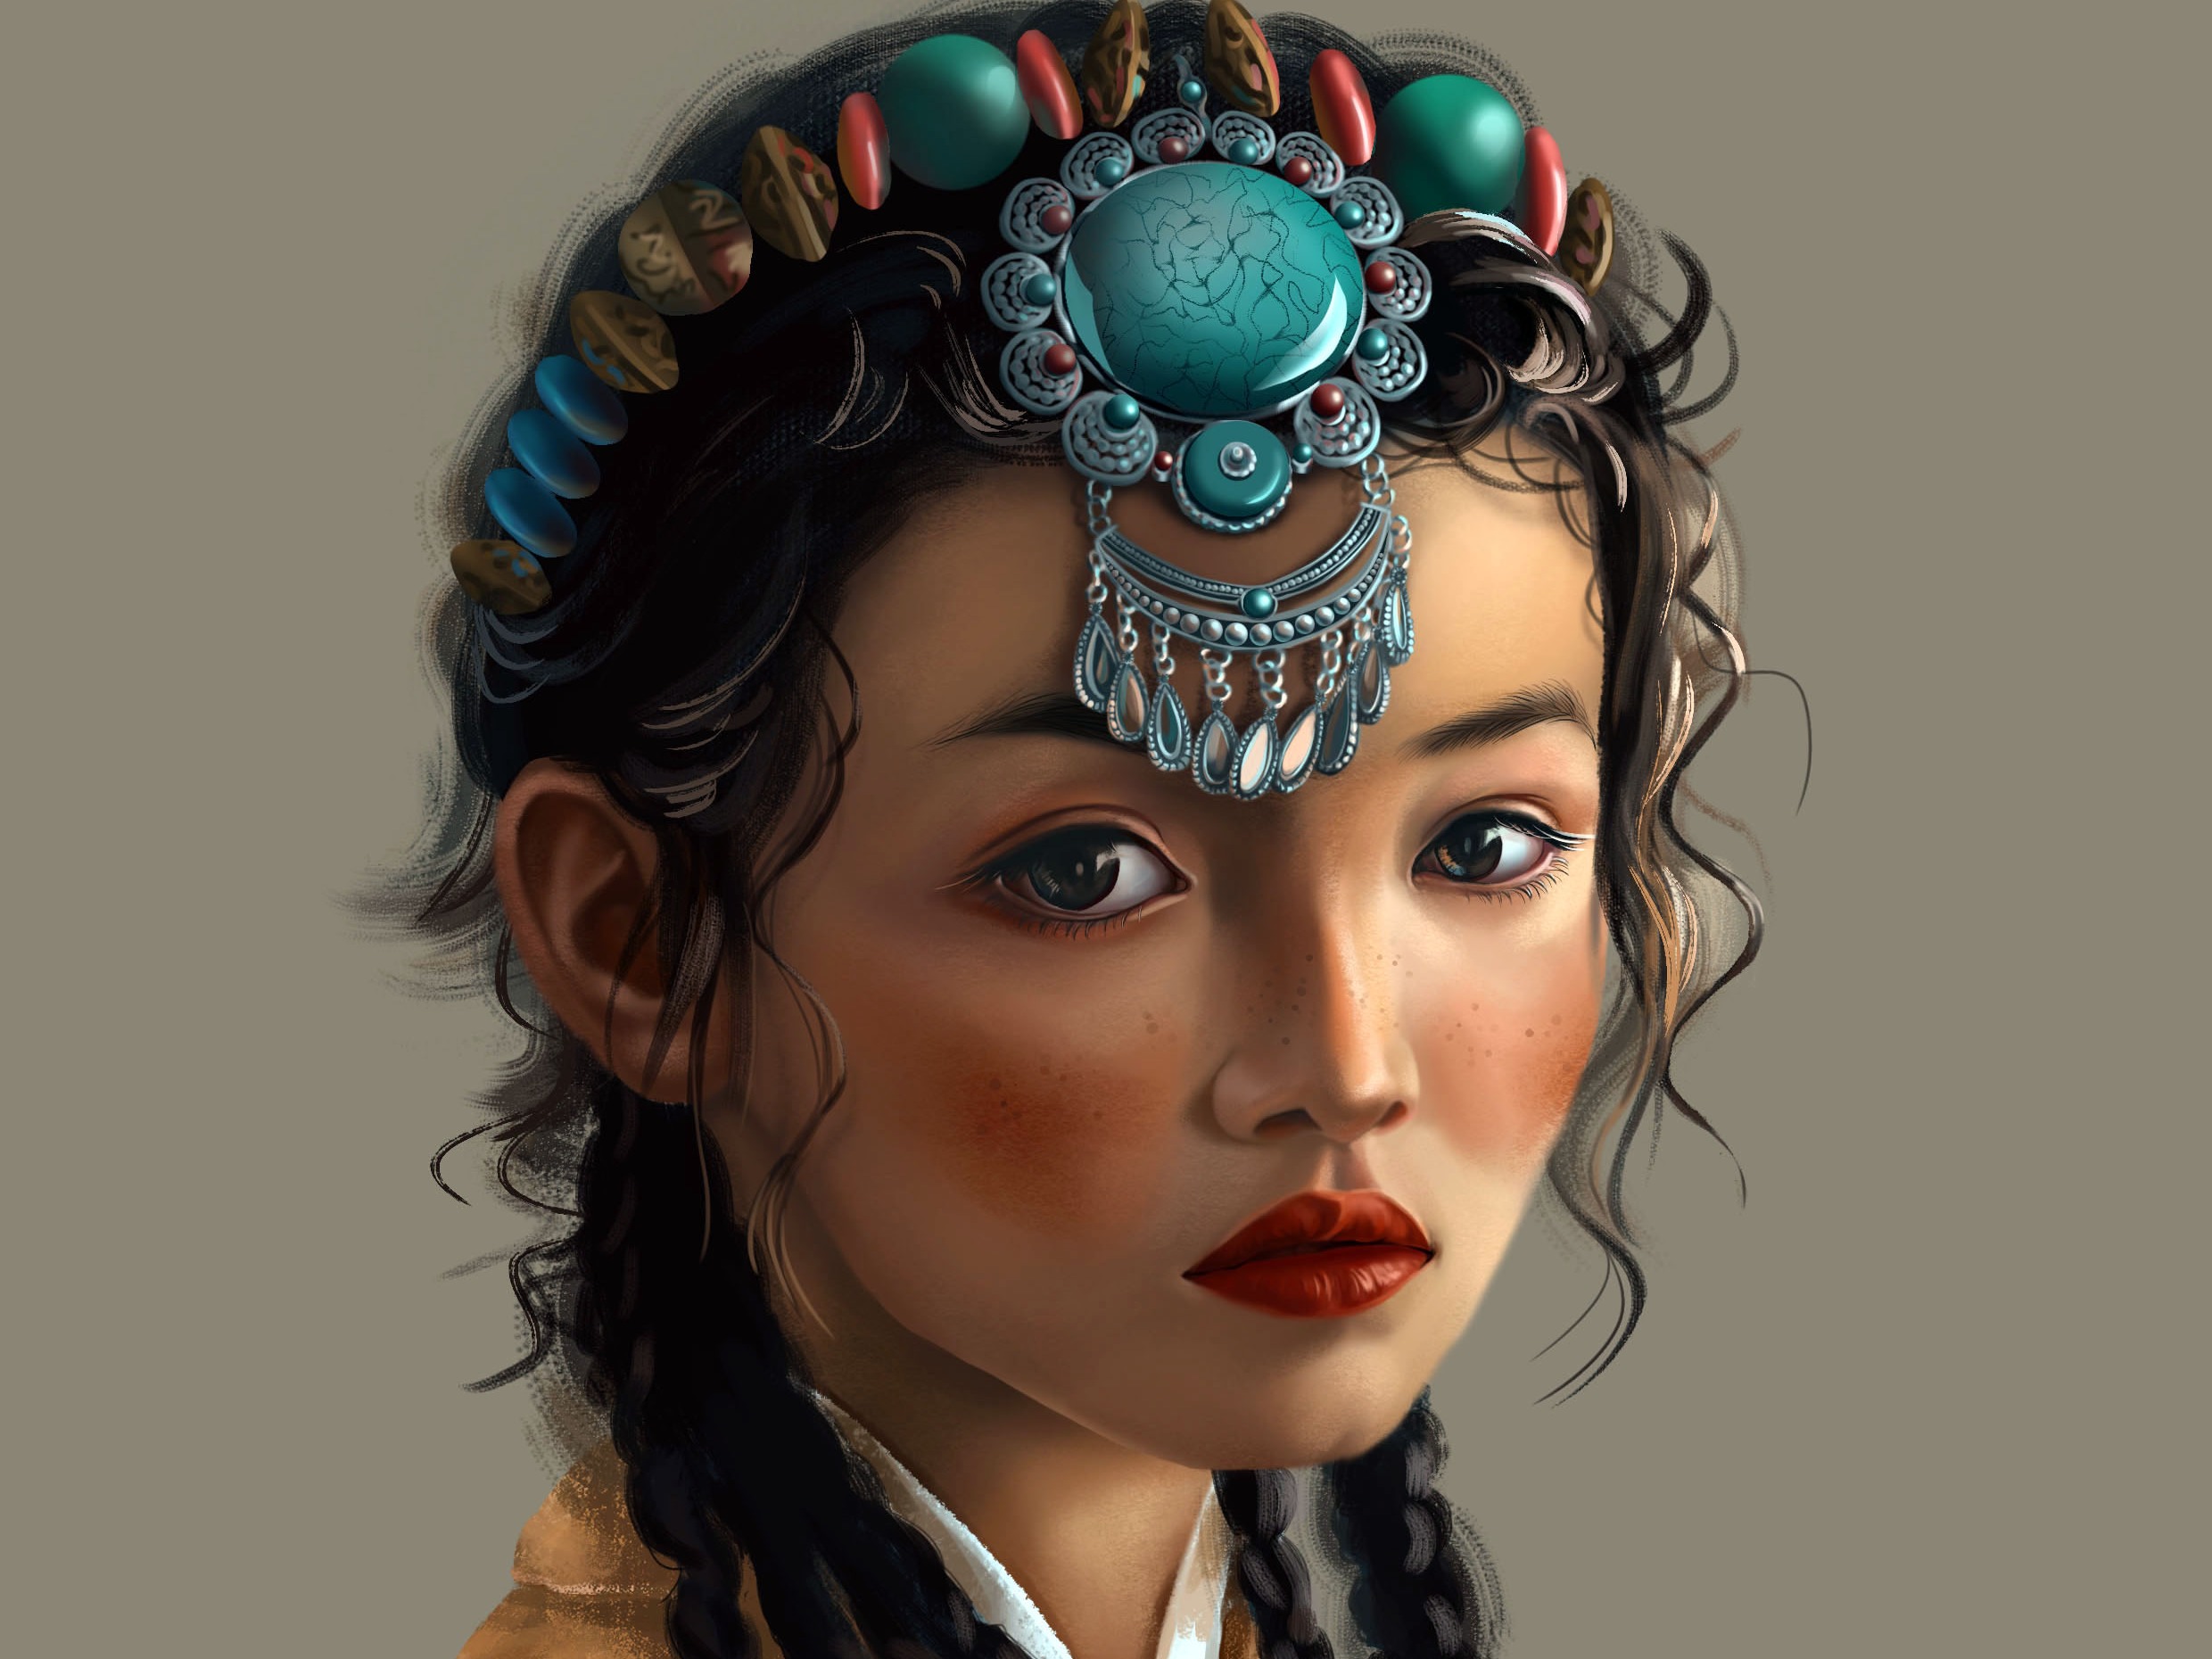 一个女孩, 长辫子, 藏族姑娘, 特写, 微微抬起头 - SeaArt AI